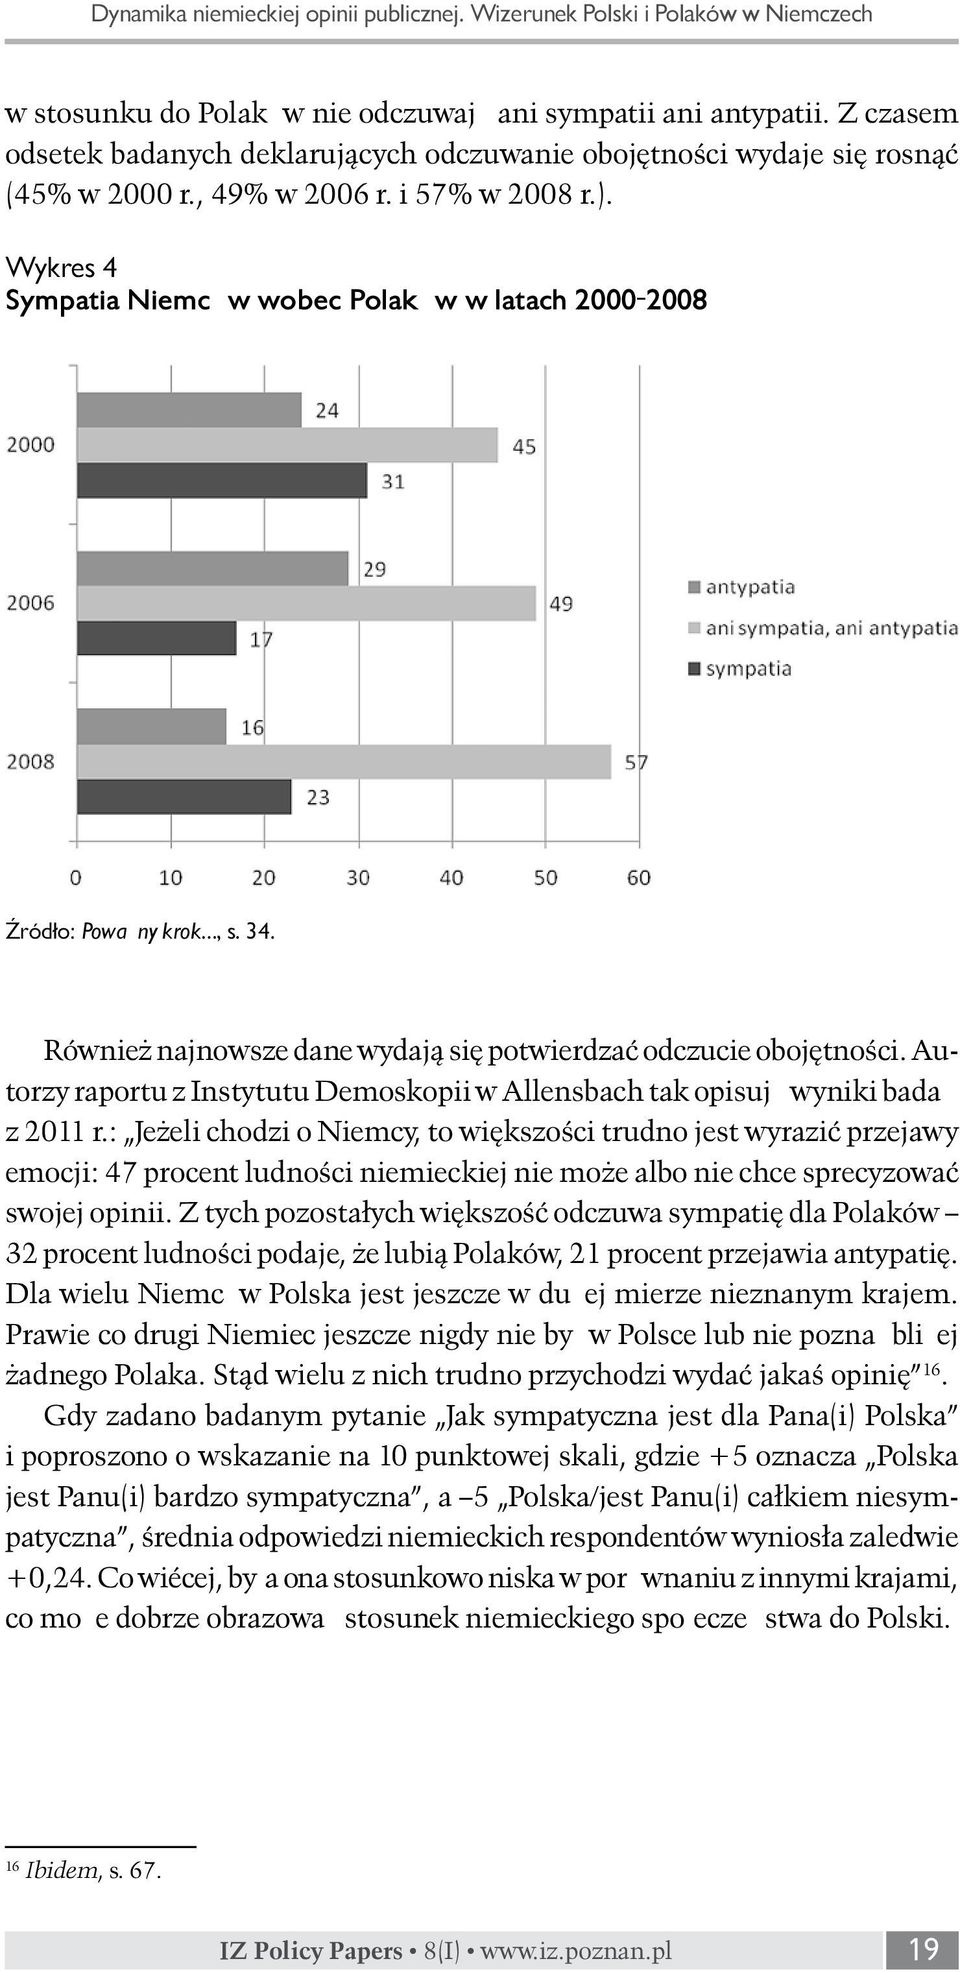 Wykres 4 Sympatia Niemców wobec Polaków w latach 2000-2008 Źródło: Poważny krok, s. 34. Również najnowsze dane wydają się potwierdzać odczucie obojętności.